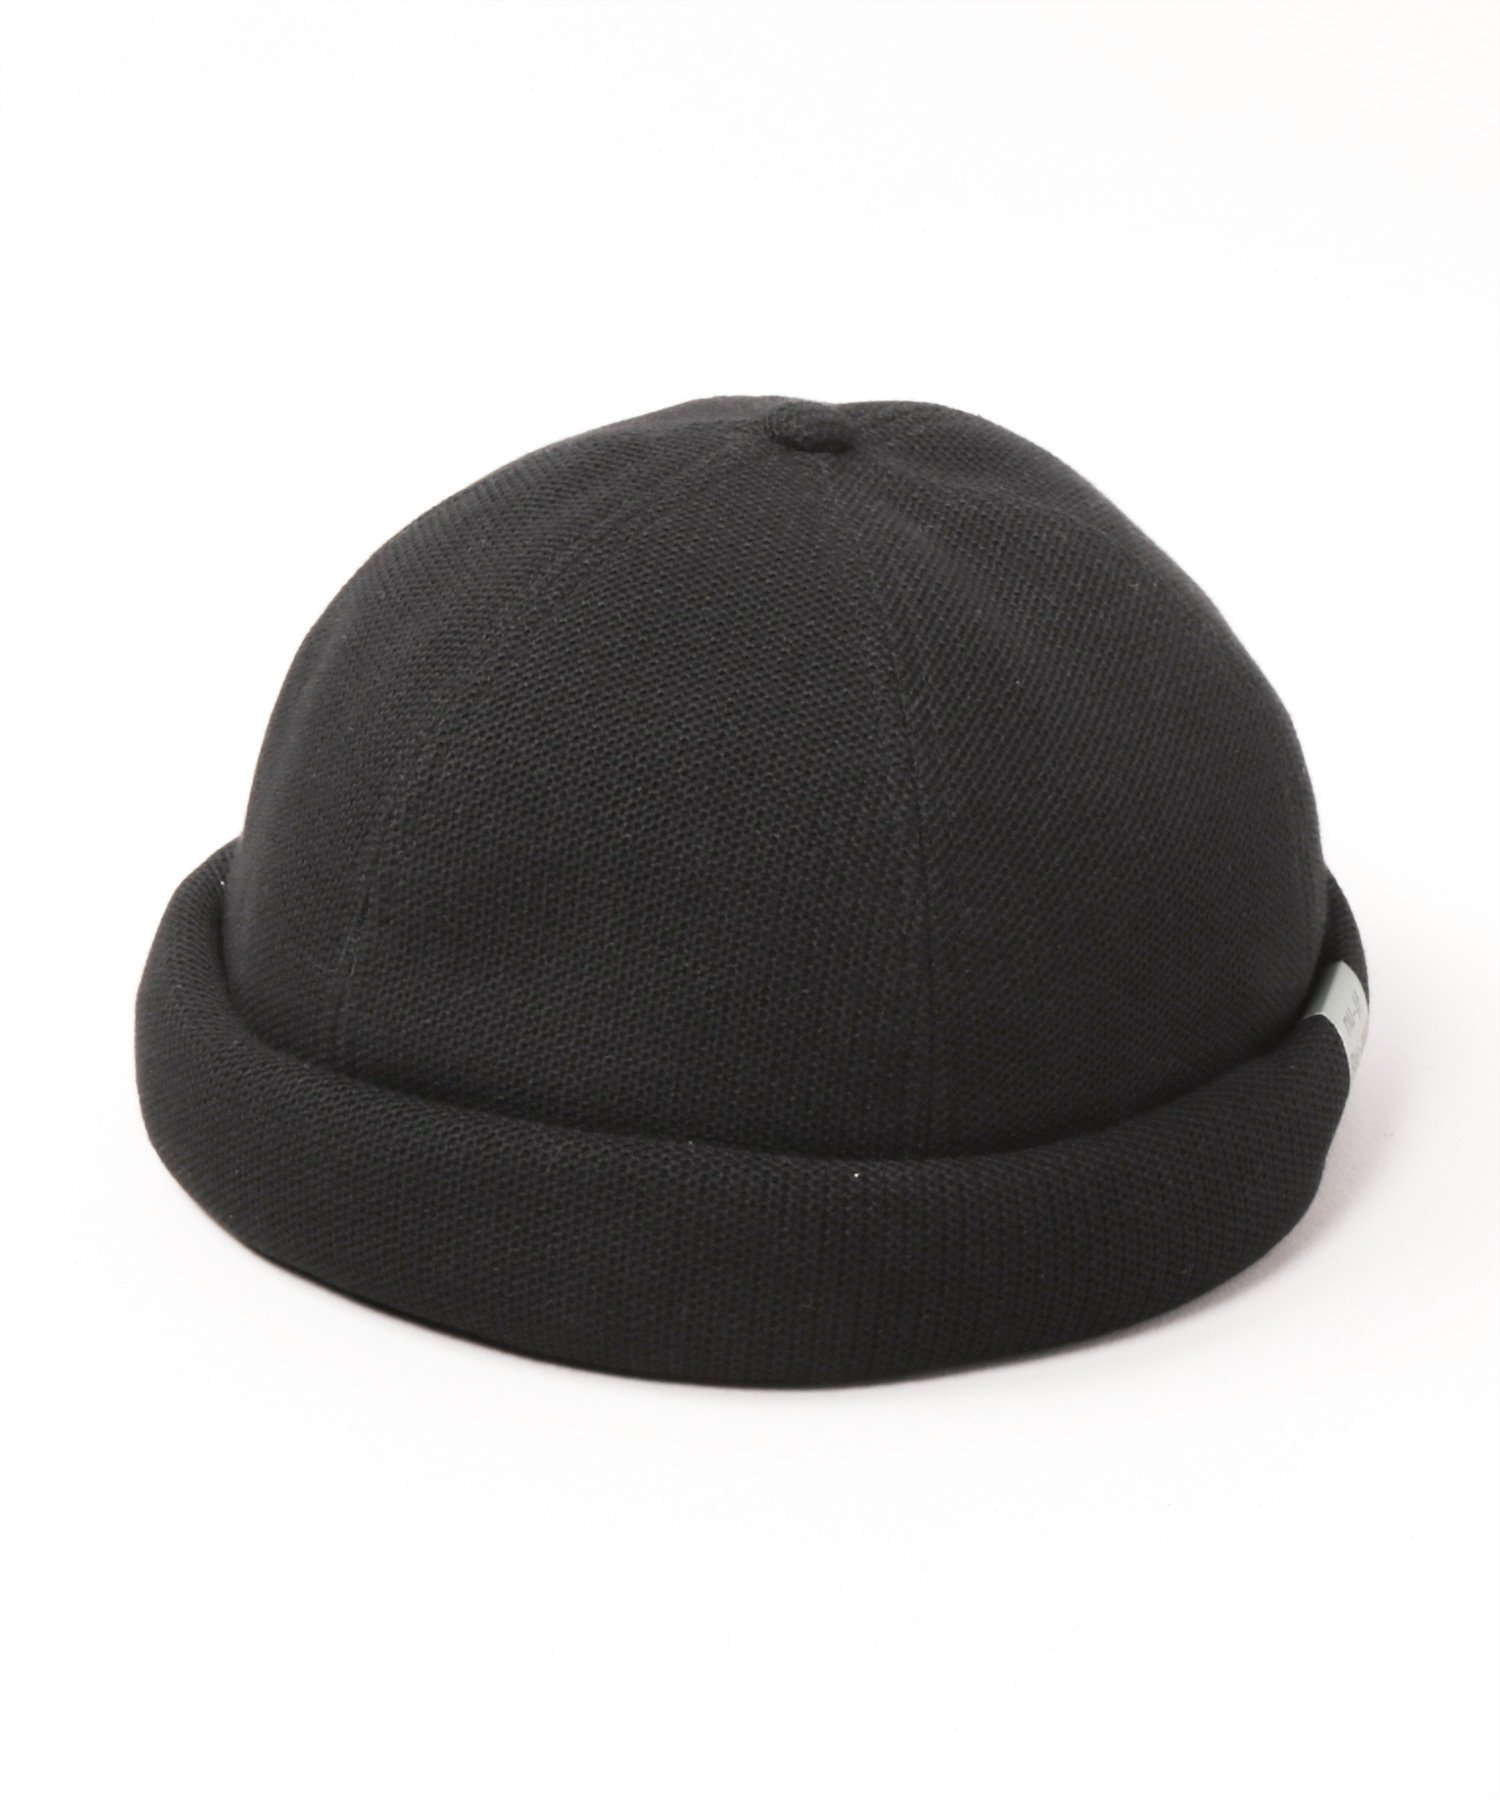 カシラ 帽子 メンズ CA4LA ROLL AS8 カシラ 帽子 キャップ ブラック ネイビー ベージュ【送料無料】